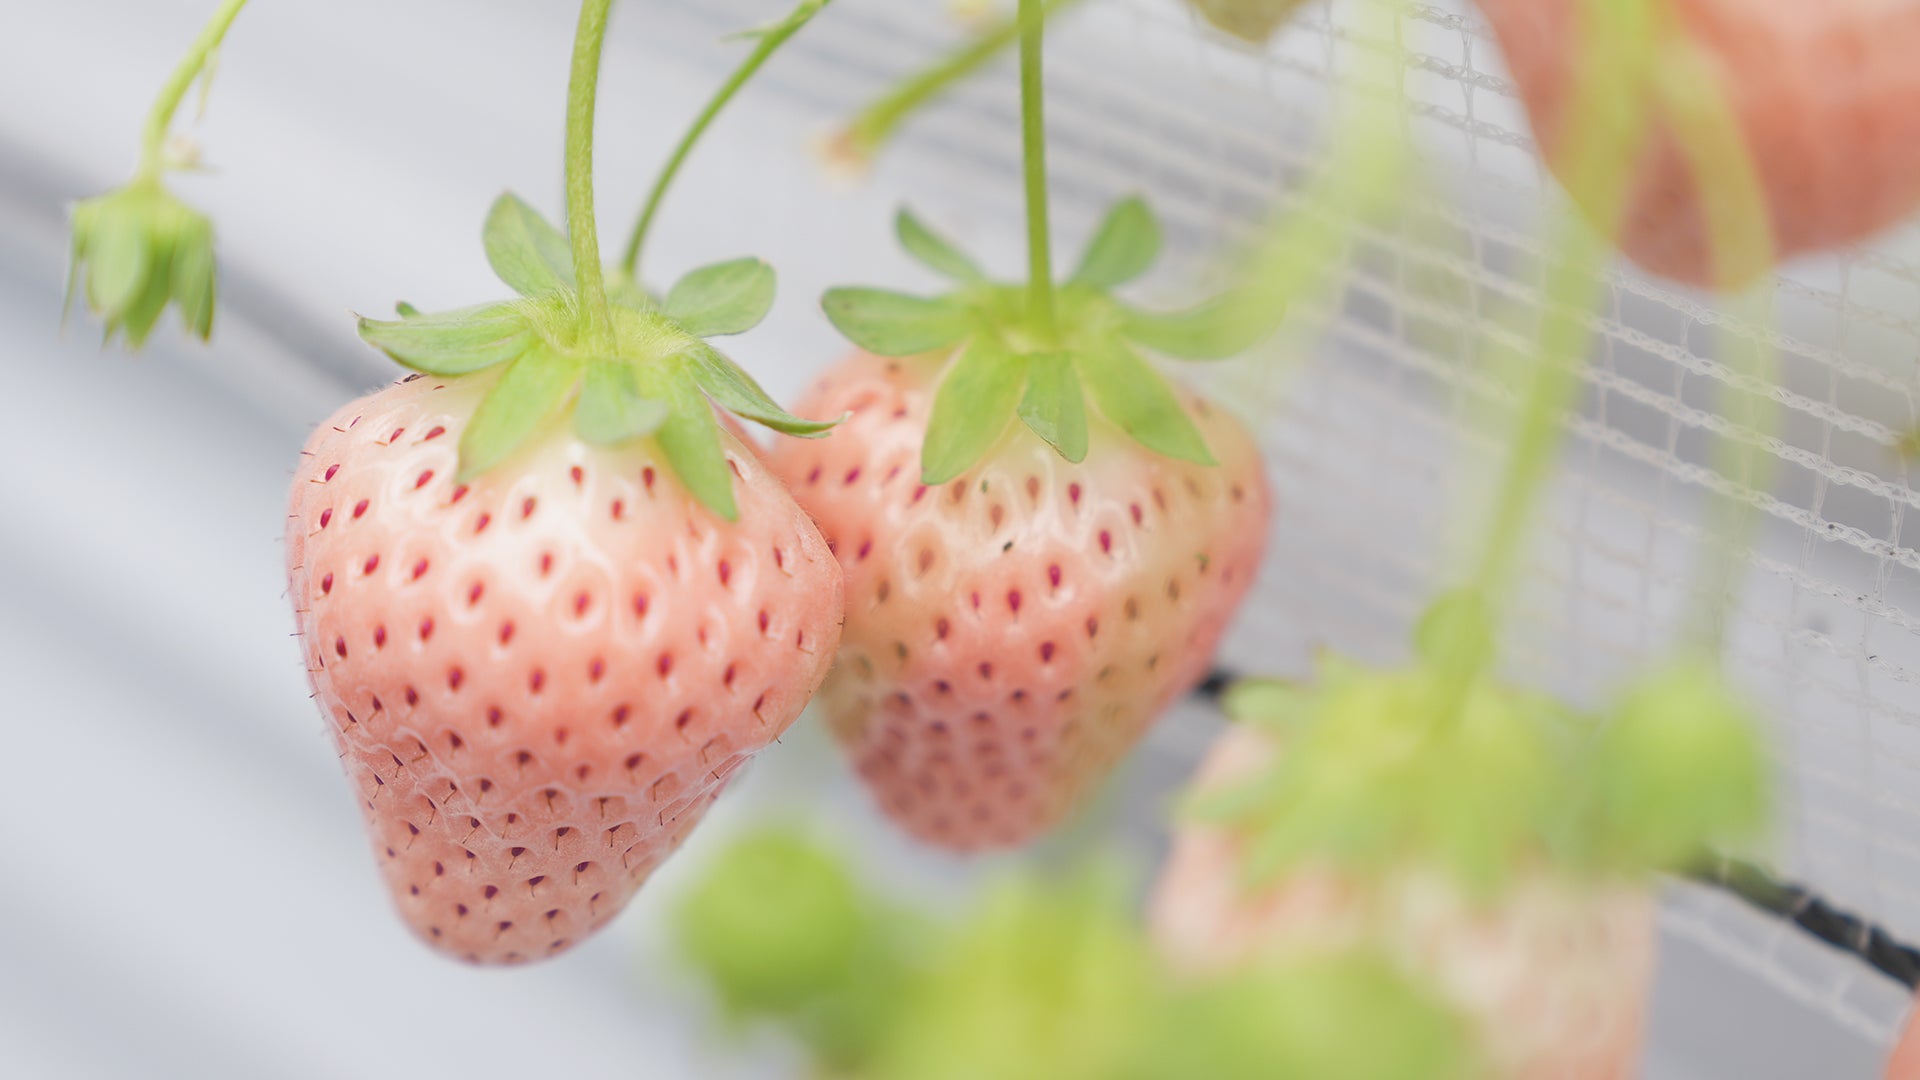 Japanese white strawberries